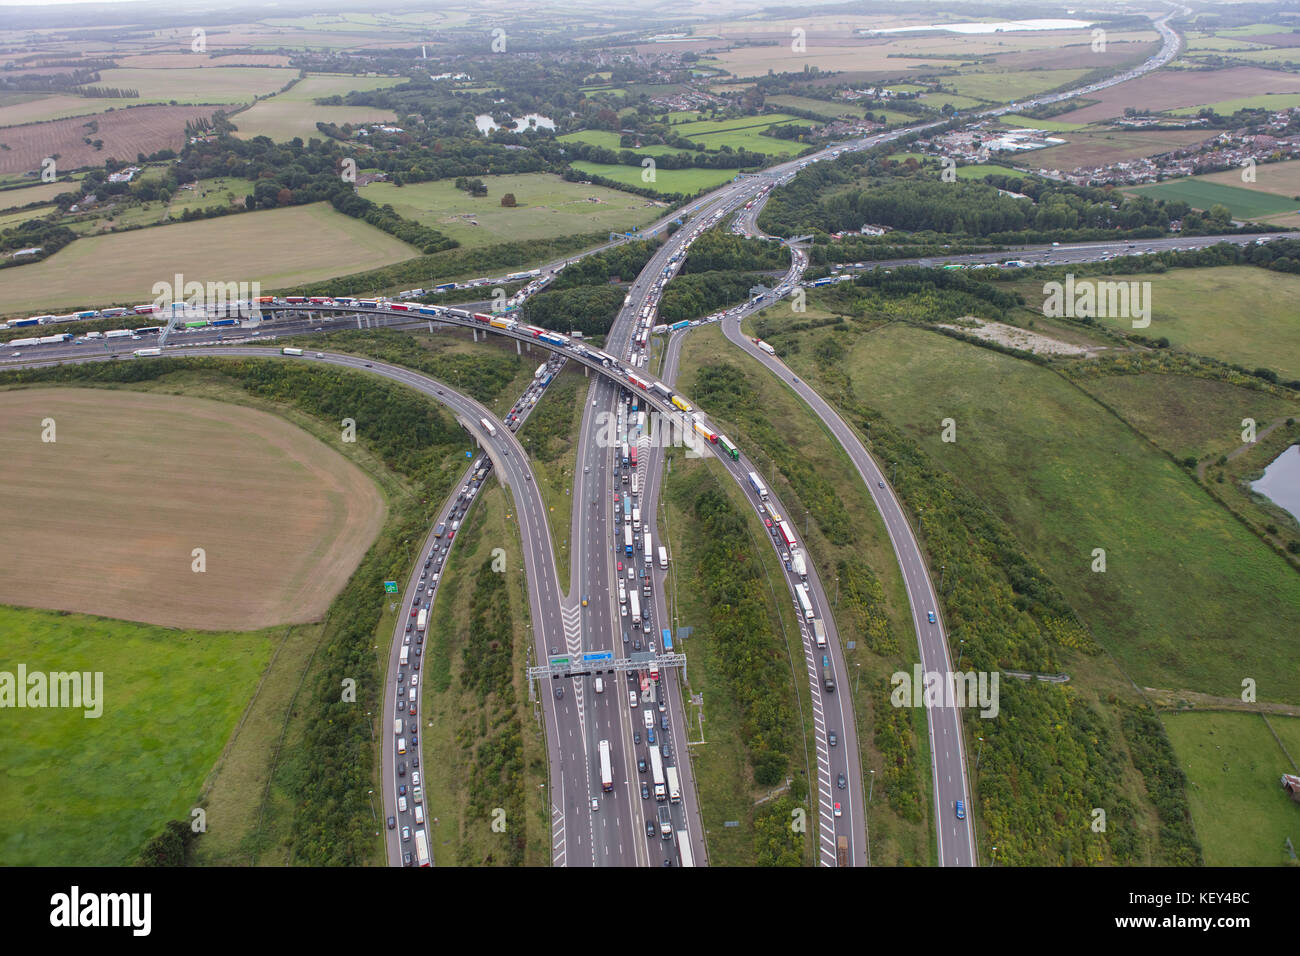 Eine Luftaufnahme anzeigen Staus an der Kreuzung 2 der Autobahn M25 London Orbital Stockfoto